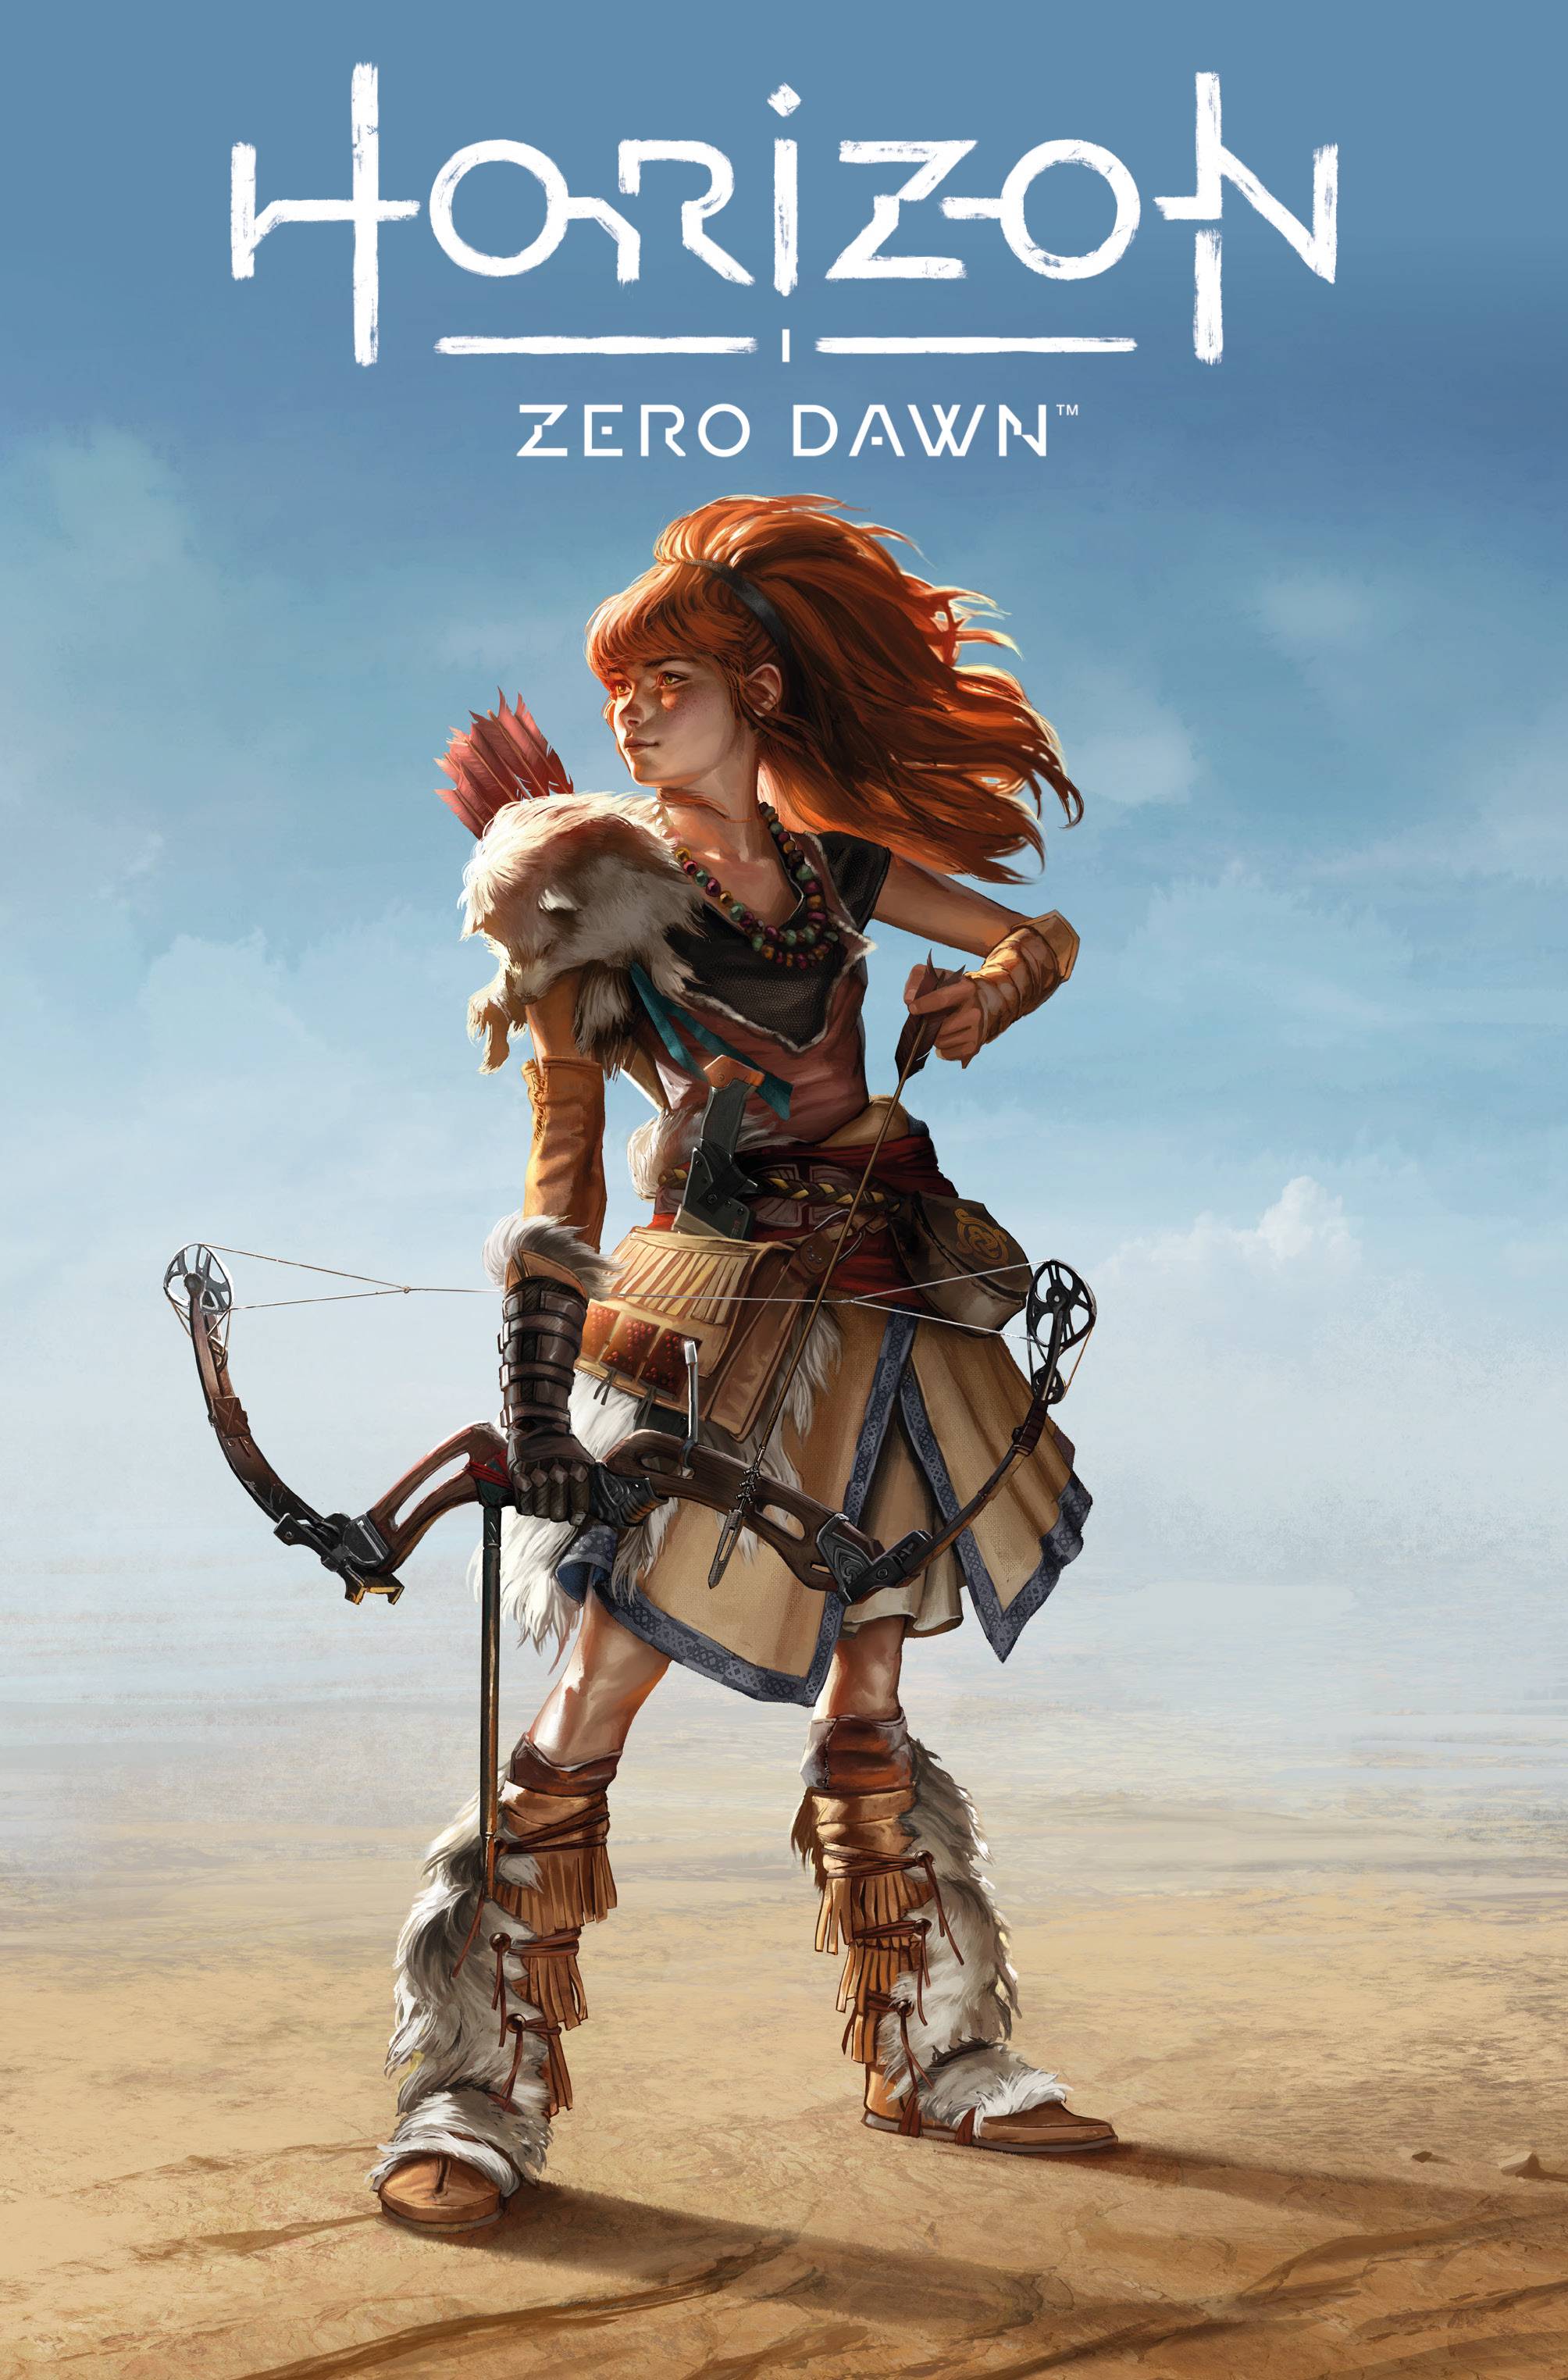 Horizon Zero Dawn #2 - gameplay demo 